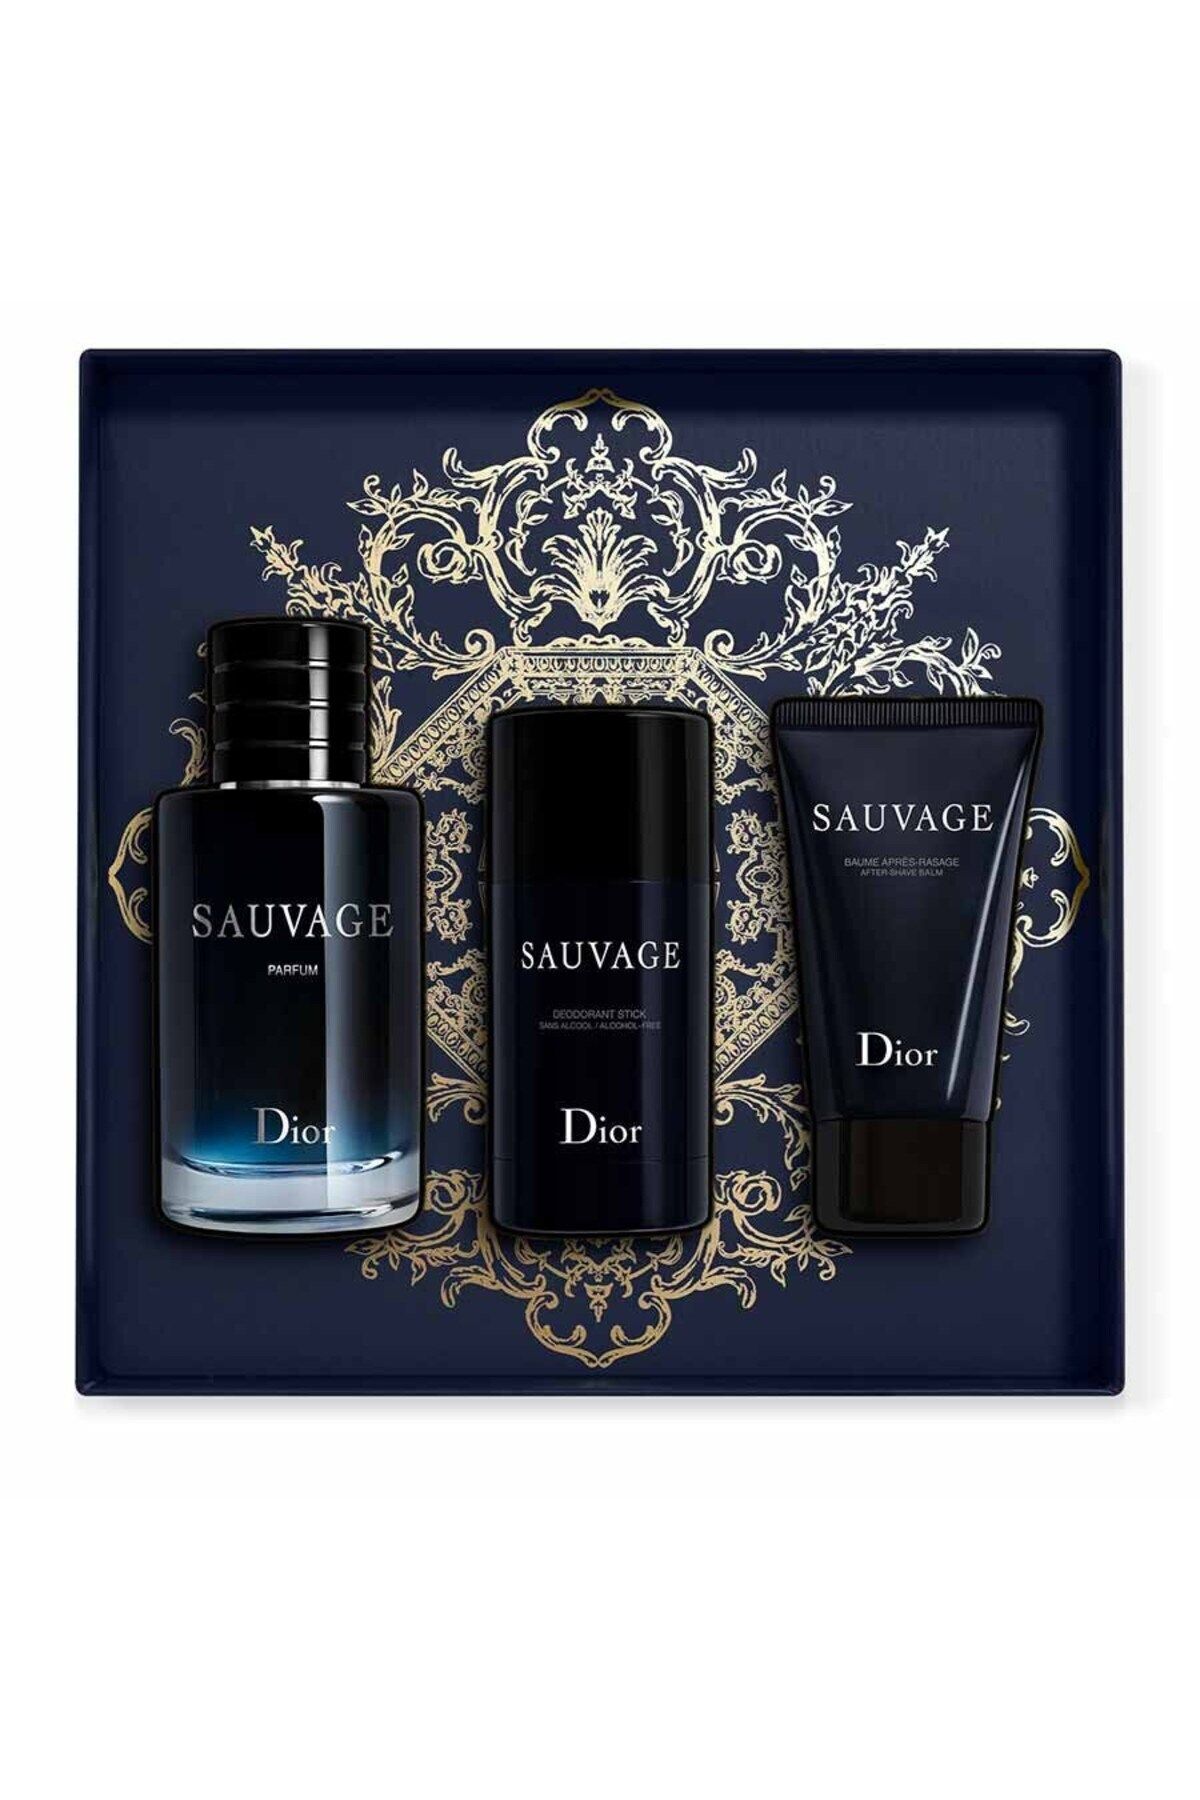 Dior Erkekler ,İçin Gizemli ve Duygusal Holiday Jewel Box Sauvage 100ml Edt Erkek Pafüm Set 3 LÜ